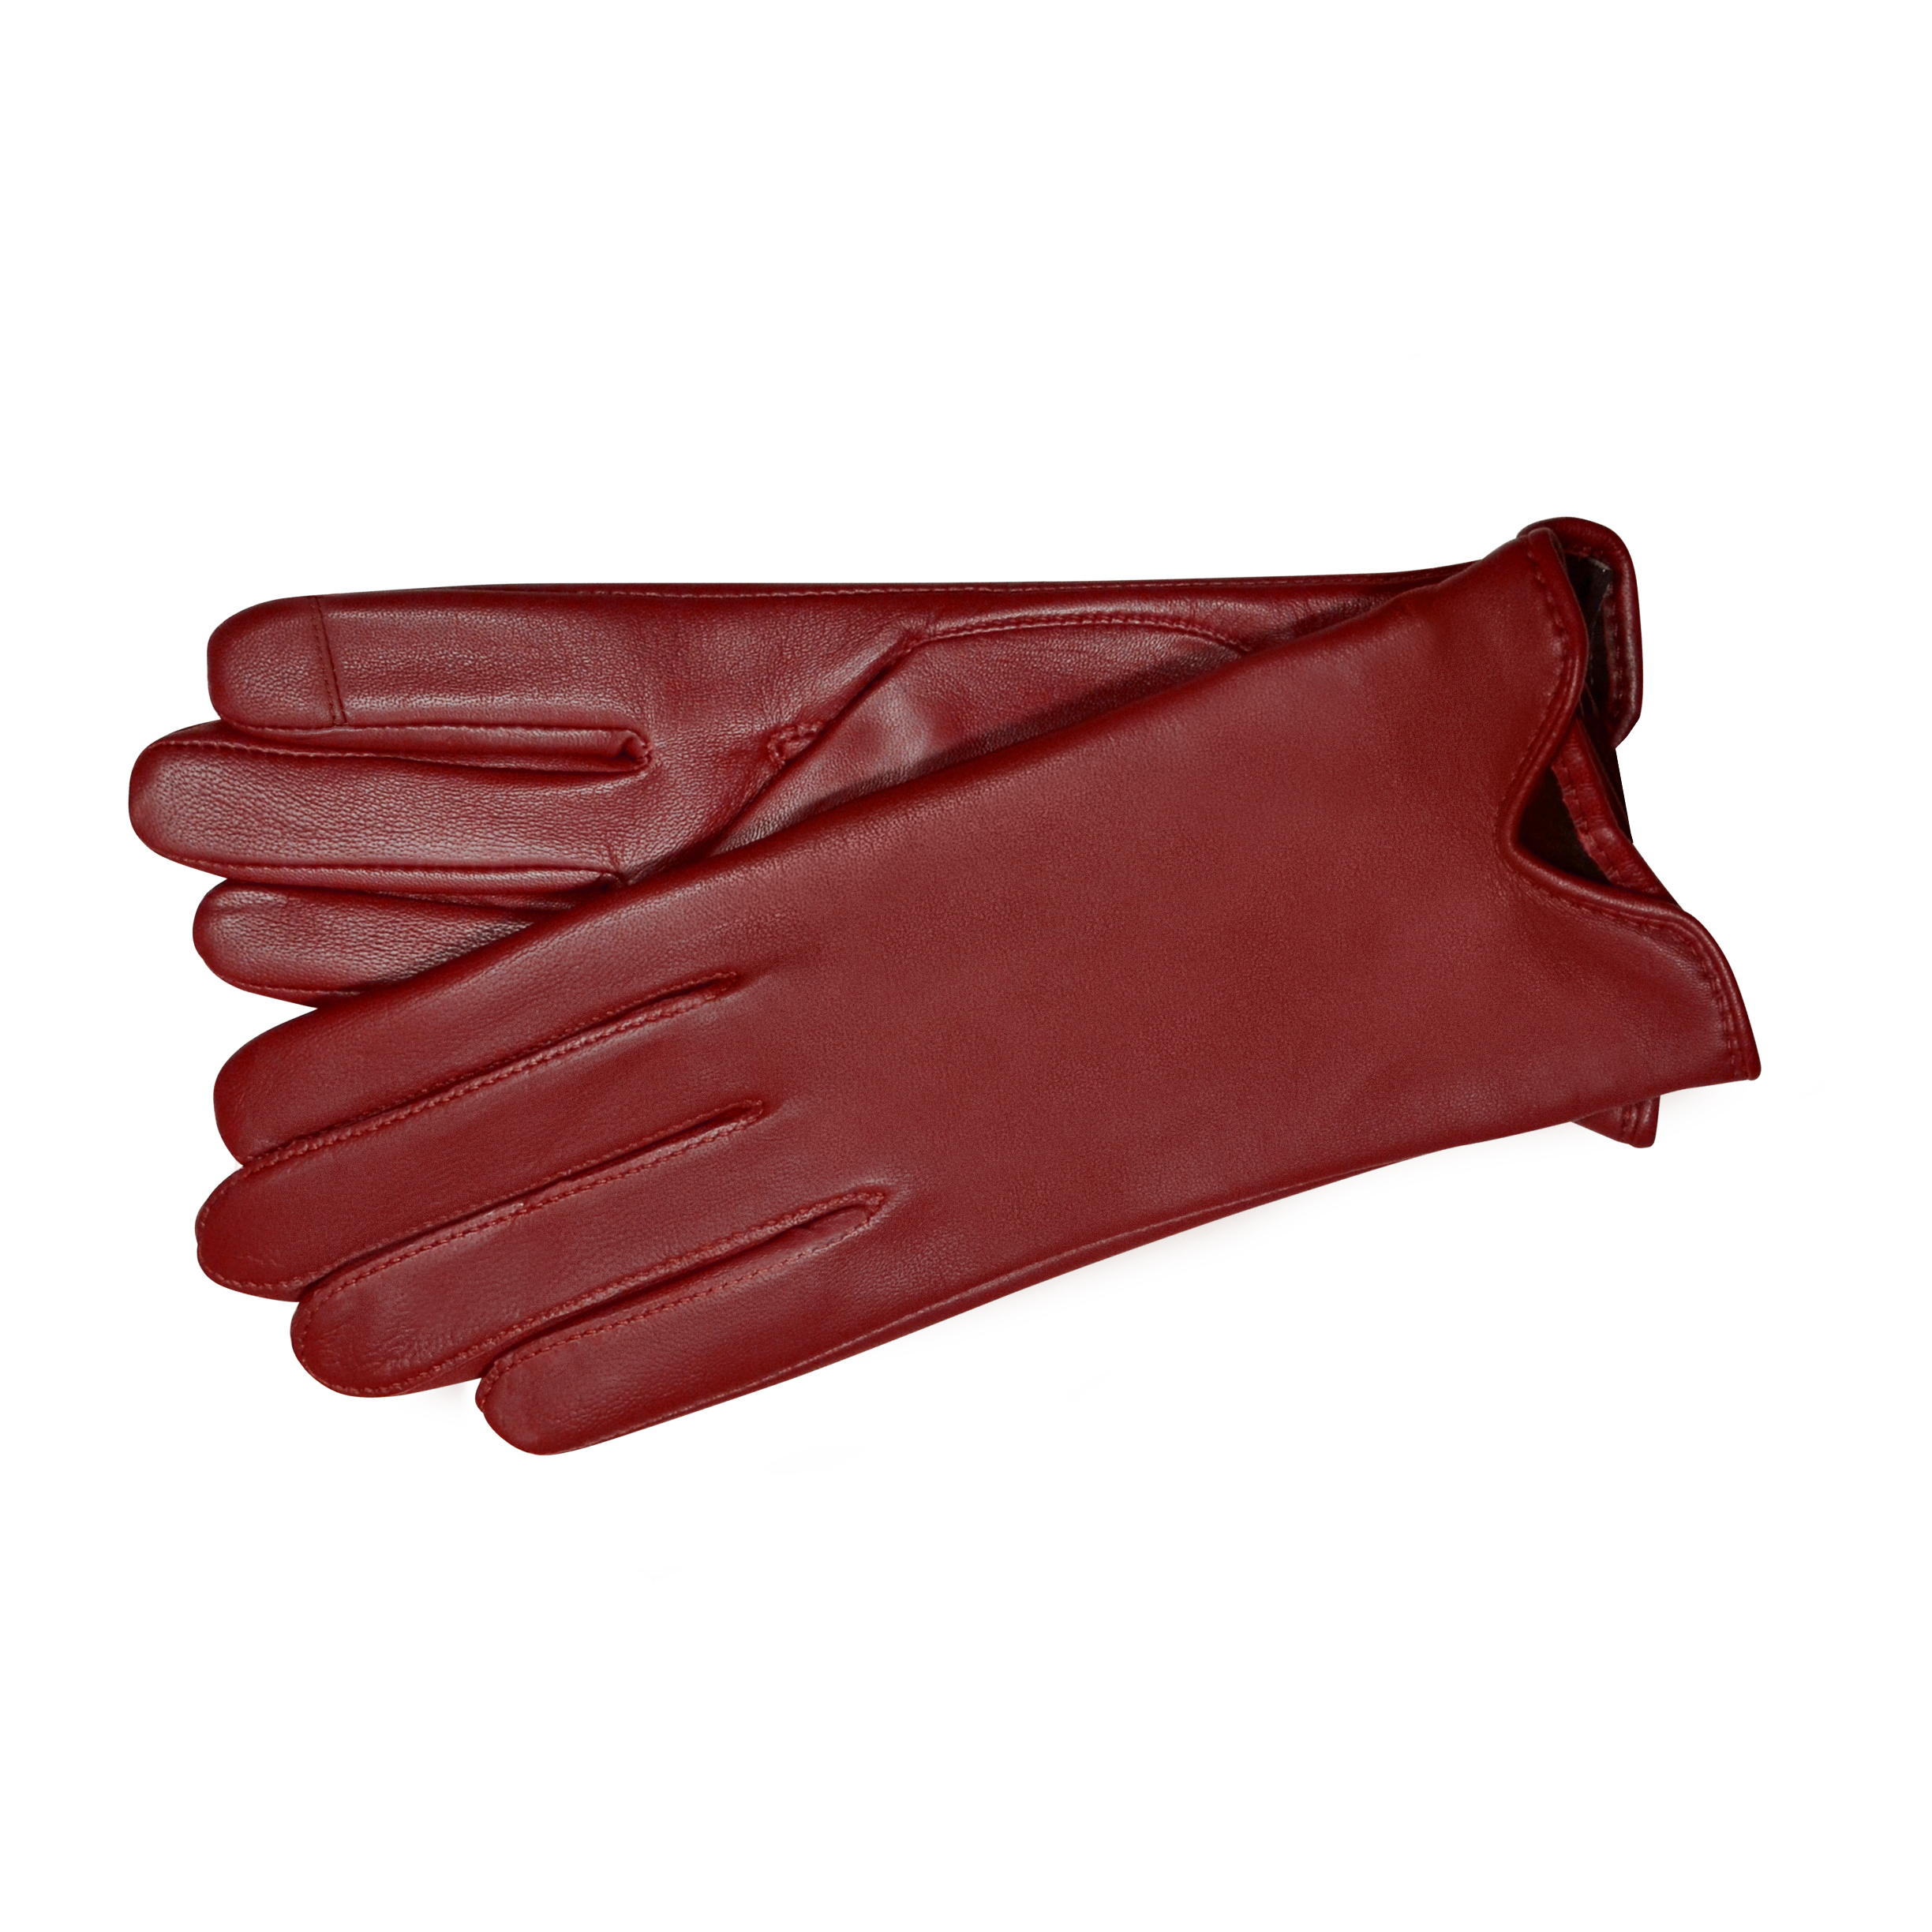 tin Charmerende et eller andet sted Belsac skindhandske i rød med touch/48 - Handsker - belsac